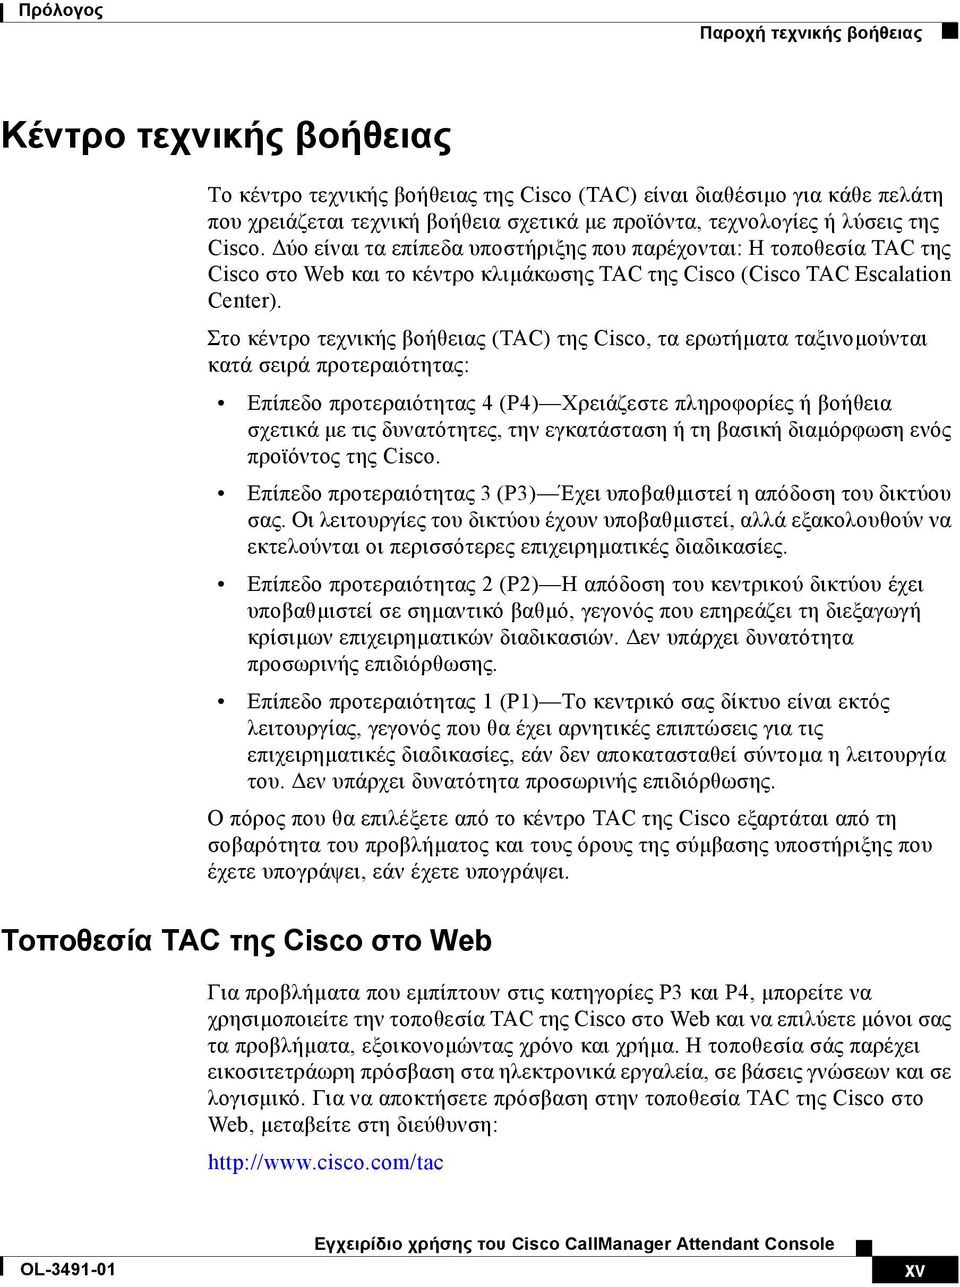 Στο κέντρο τεχνικής βοήθειας (TAC) της Cisco, τα ερωτήµατα ταξινοµούνται κατά σειρά προτεραιότητας: Επίπεδο προτεραιότητας 4 (P4) Χρειάζεστε πληροφορίες ή βοήθεια σχετικά µε τις δυνατότητες, την